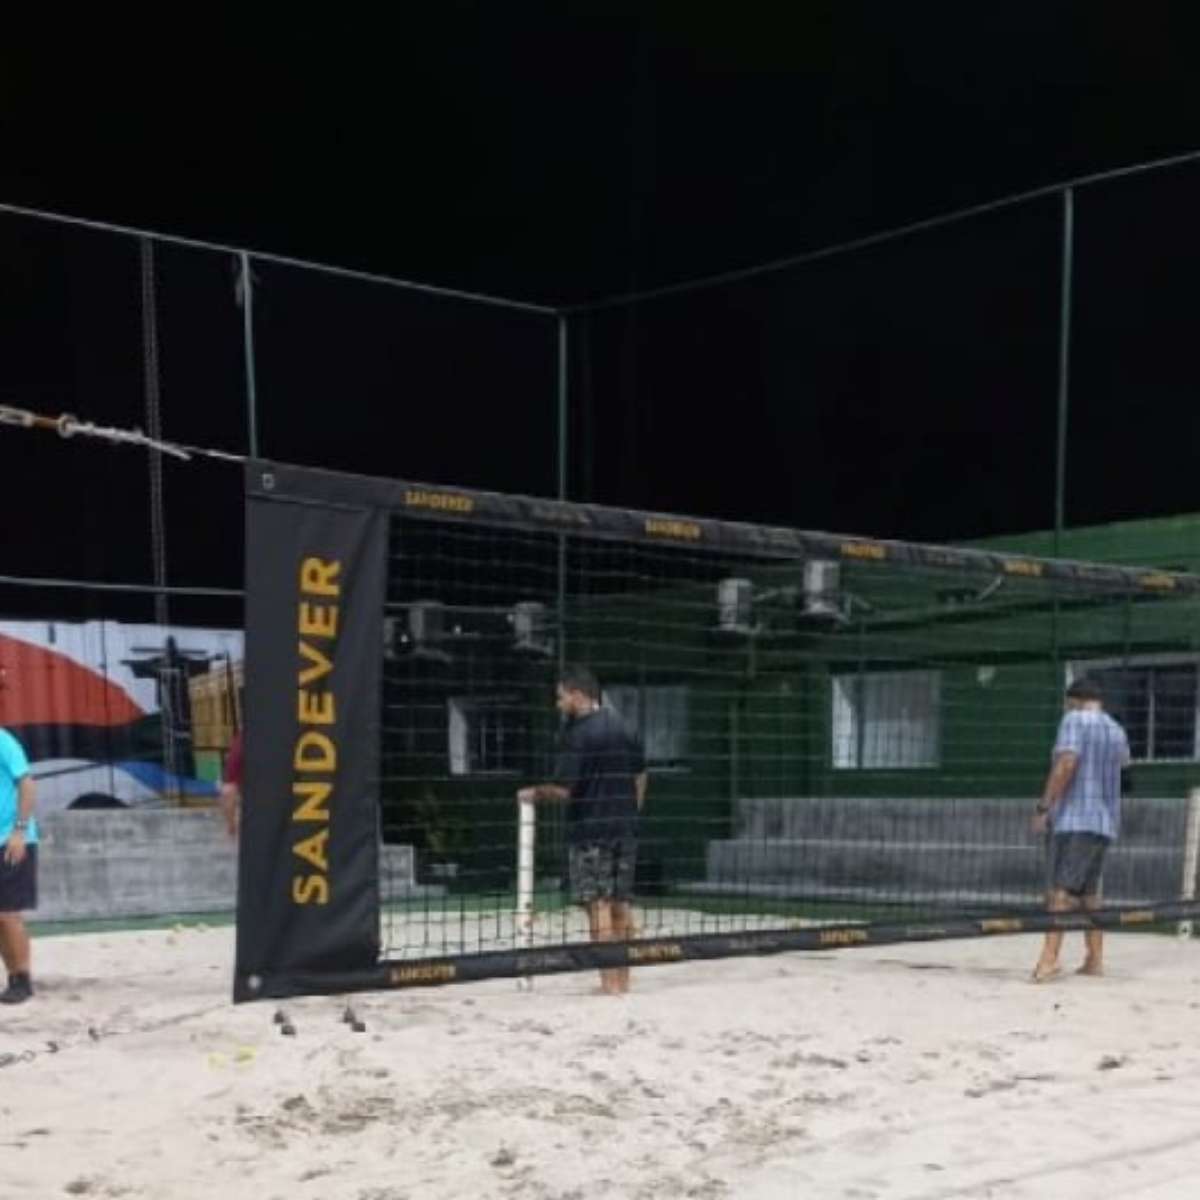 Beach tennis é destaque neste domingo no Verão Rio - Jornal O Globo